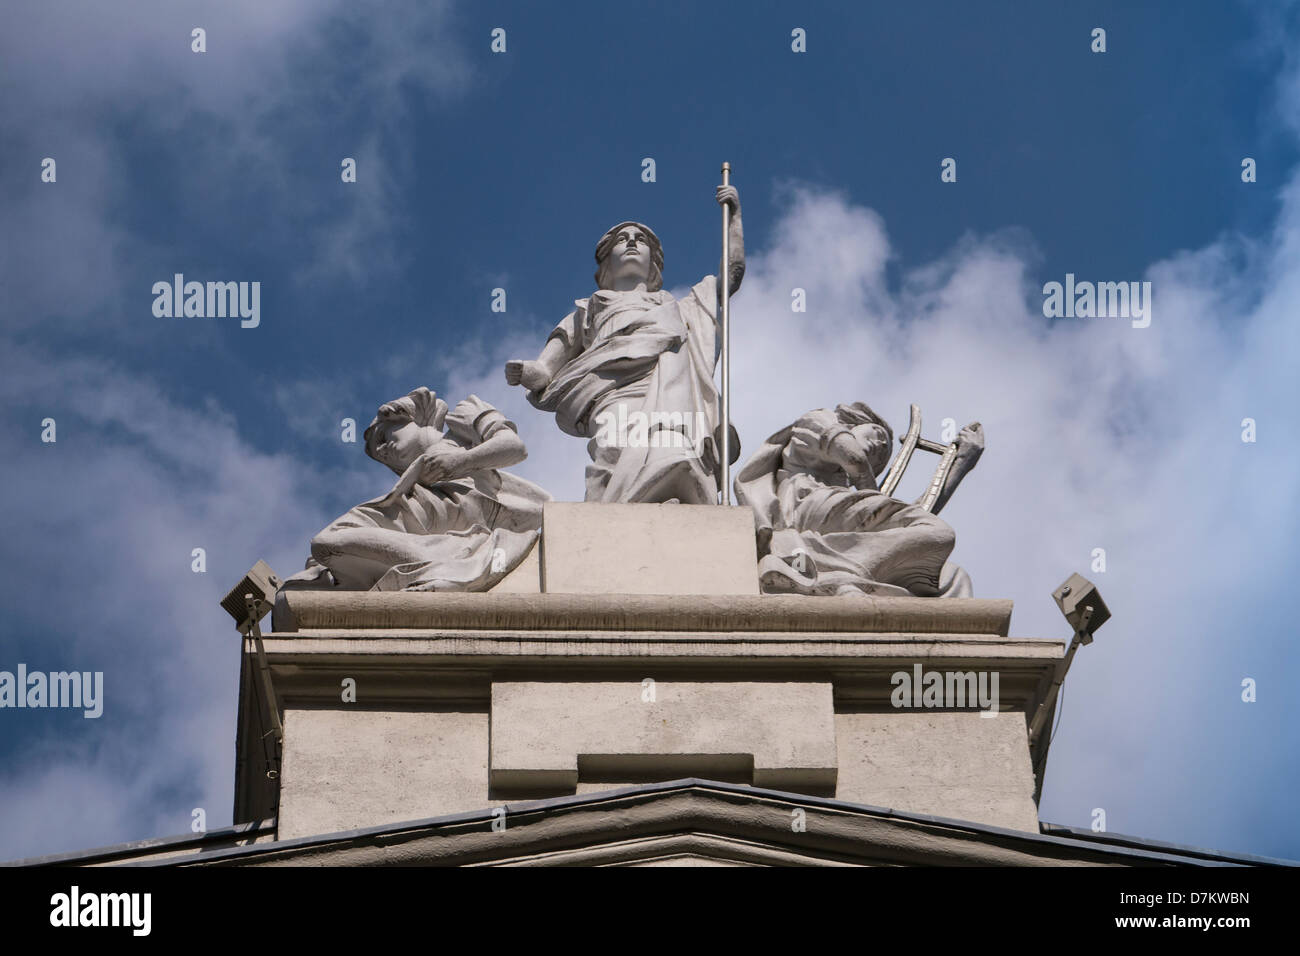 LONDRES, Royaume-Uni - 06 MAI 2013 : statue sur le palladium de Londres contre ciel nuageux Banque D'Images